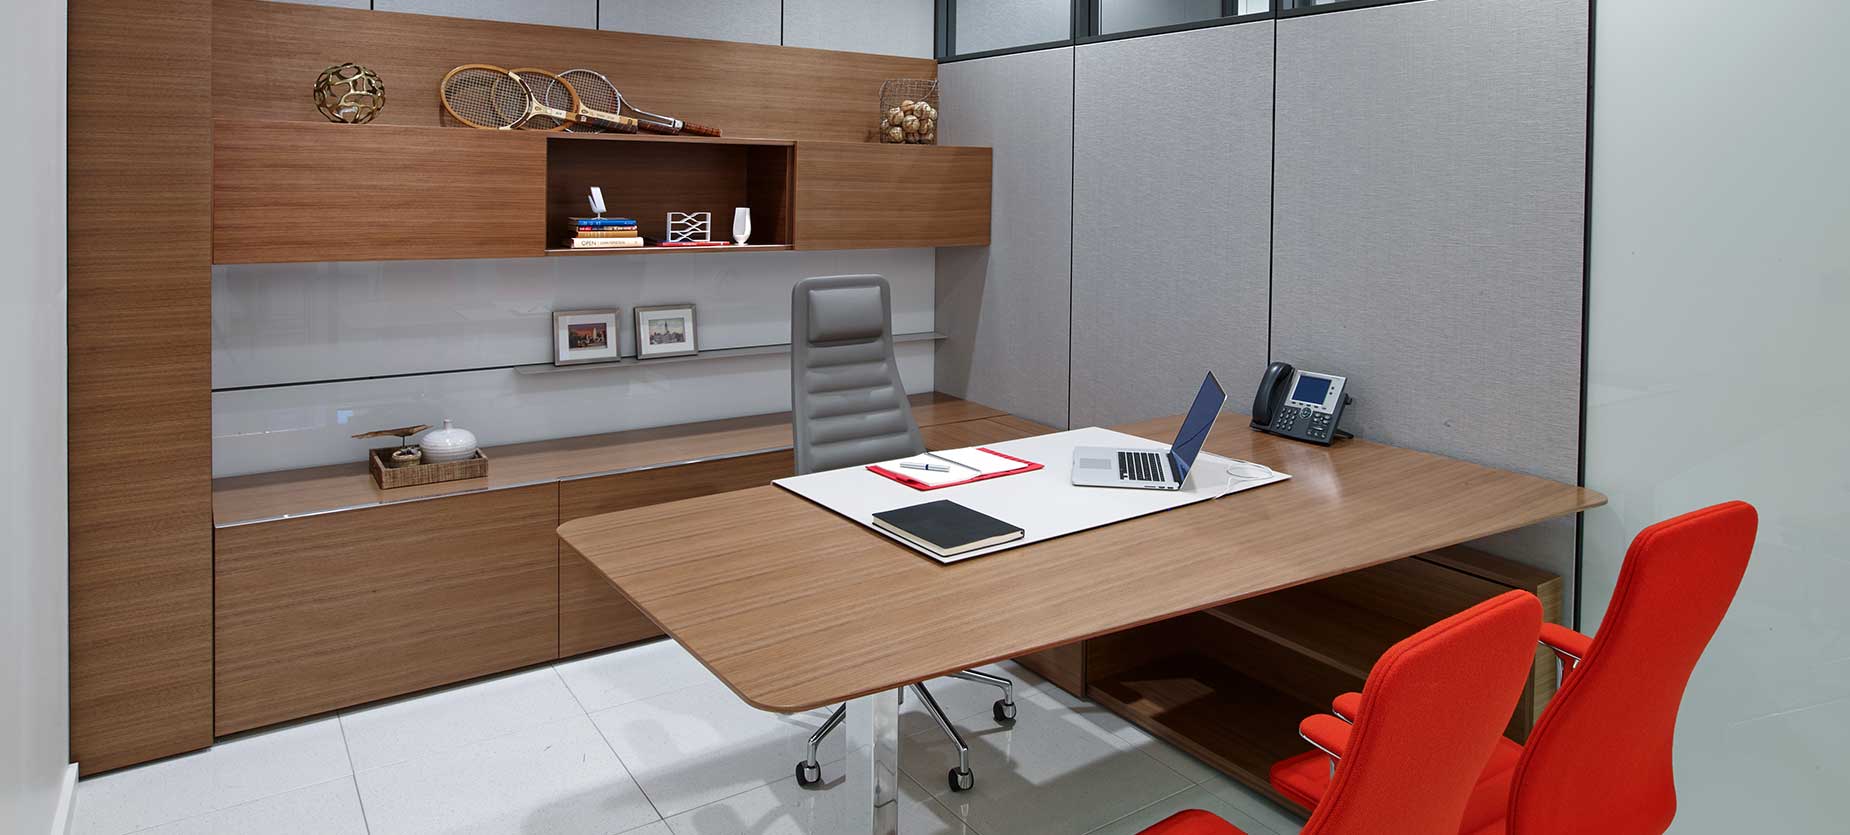 スイートプライベートオフィスは、高級感があり、高さ調節可能なテーブル、作業面に設置された電源など機能面も充実しています。椅子類は、Lotusハイバック エグゼクティブ アームチェアとLotusミッドバック チェアを置いています。